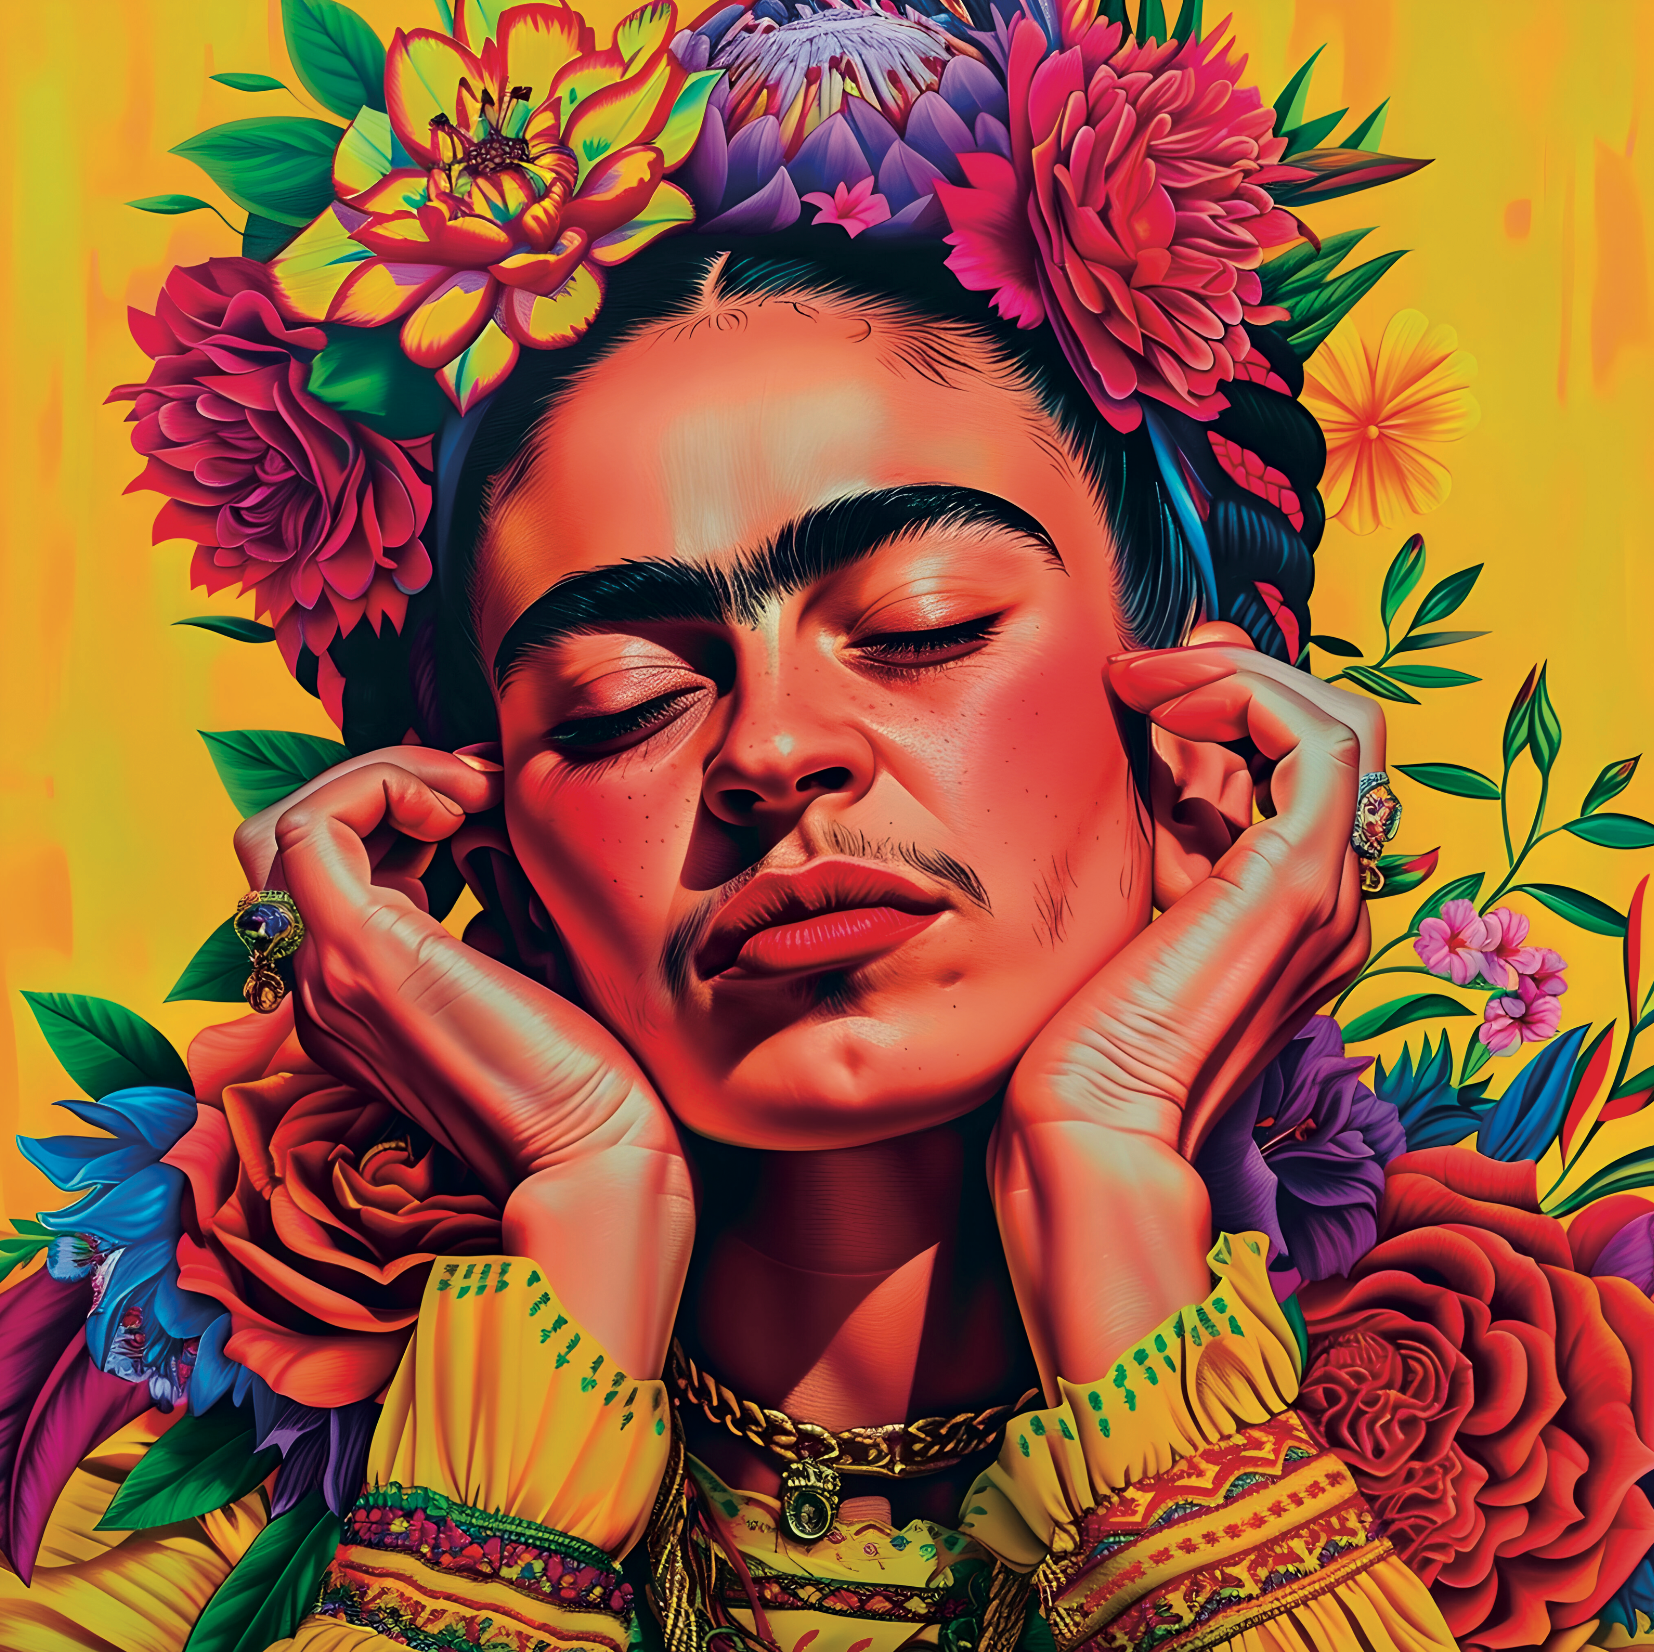 Tableau Floral Frida Kahlo - Décoration Murale Colorée - Fabulartz.fr 